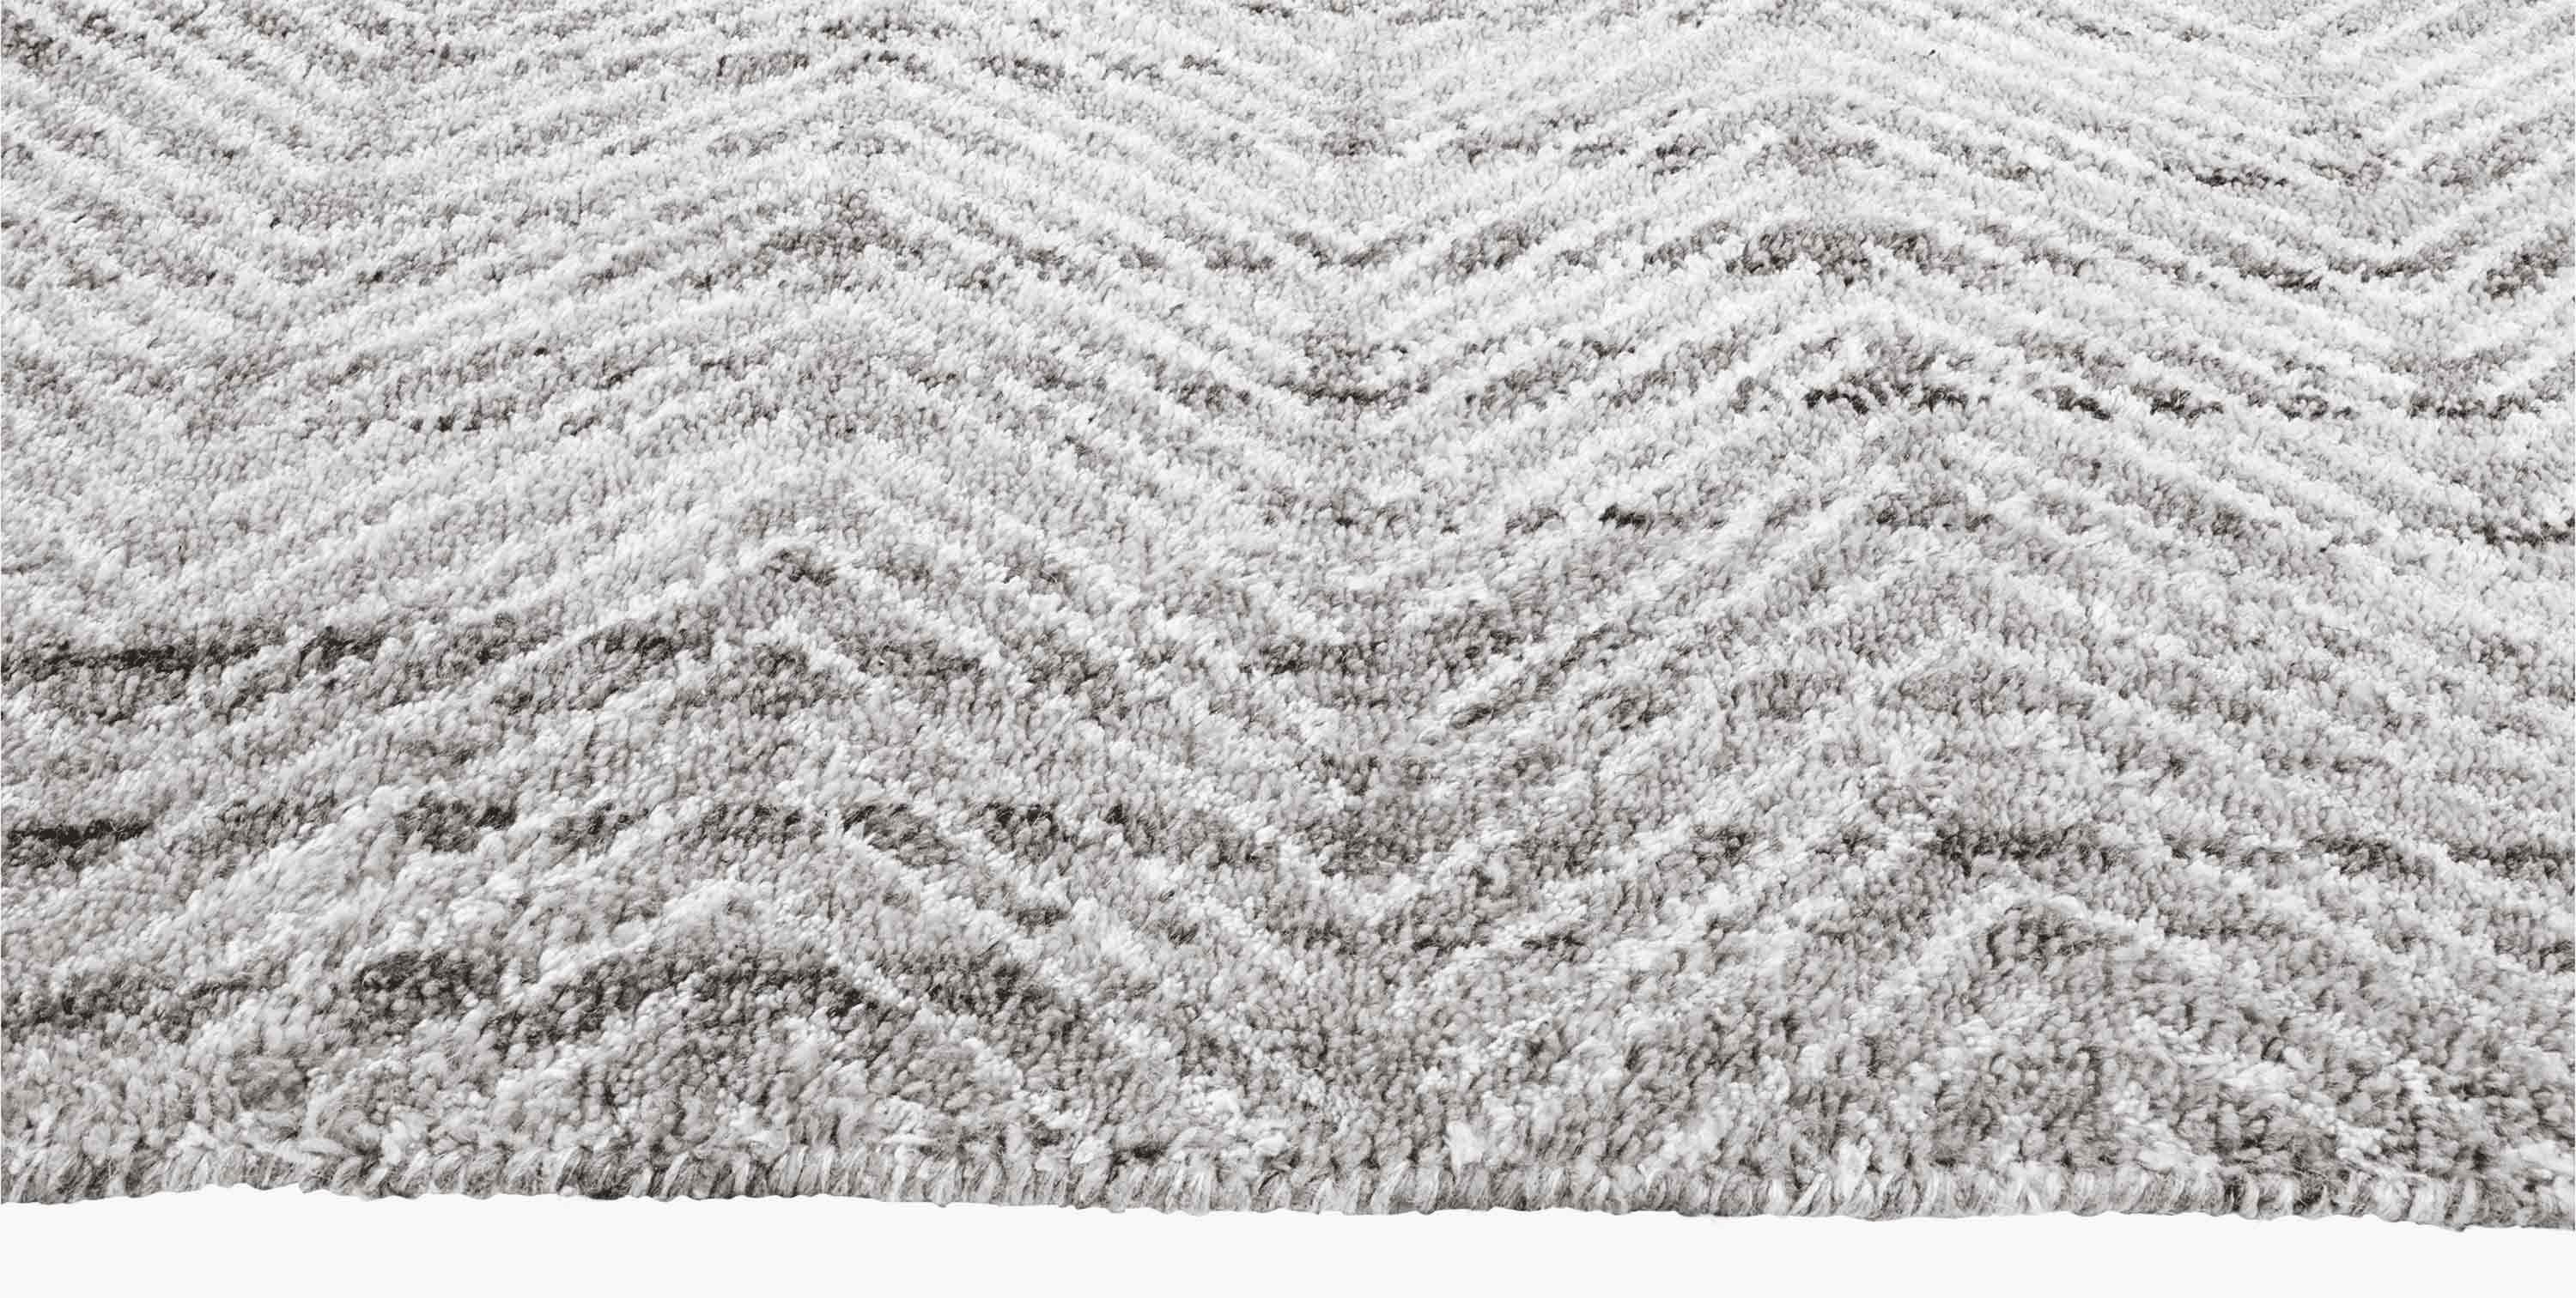 For Sale: Gray (Silver/White) Ben Soleimani Alia Rug– Hand-woven Chevron Wool + Viscose Black/Gray 8'x10' 3